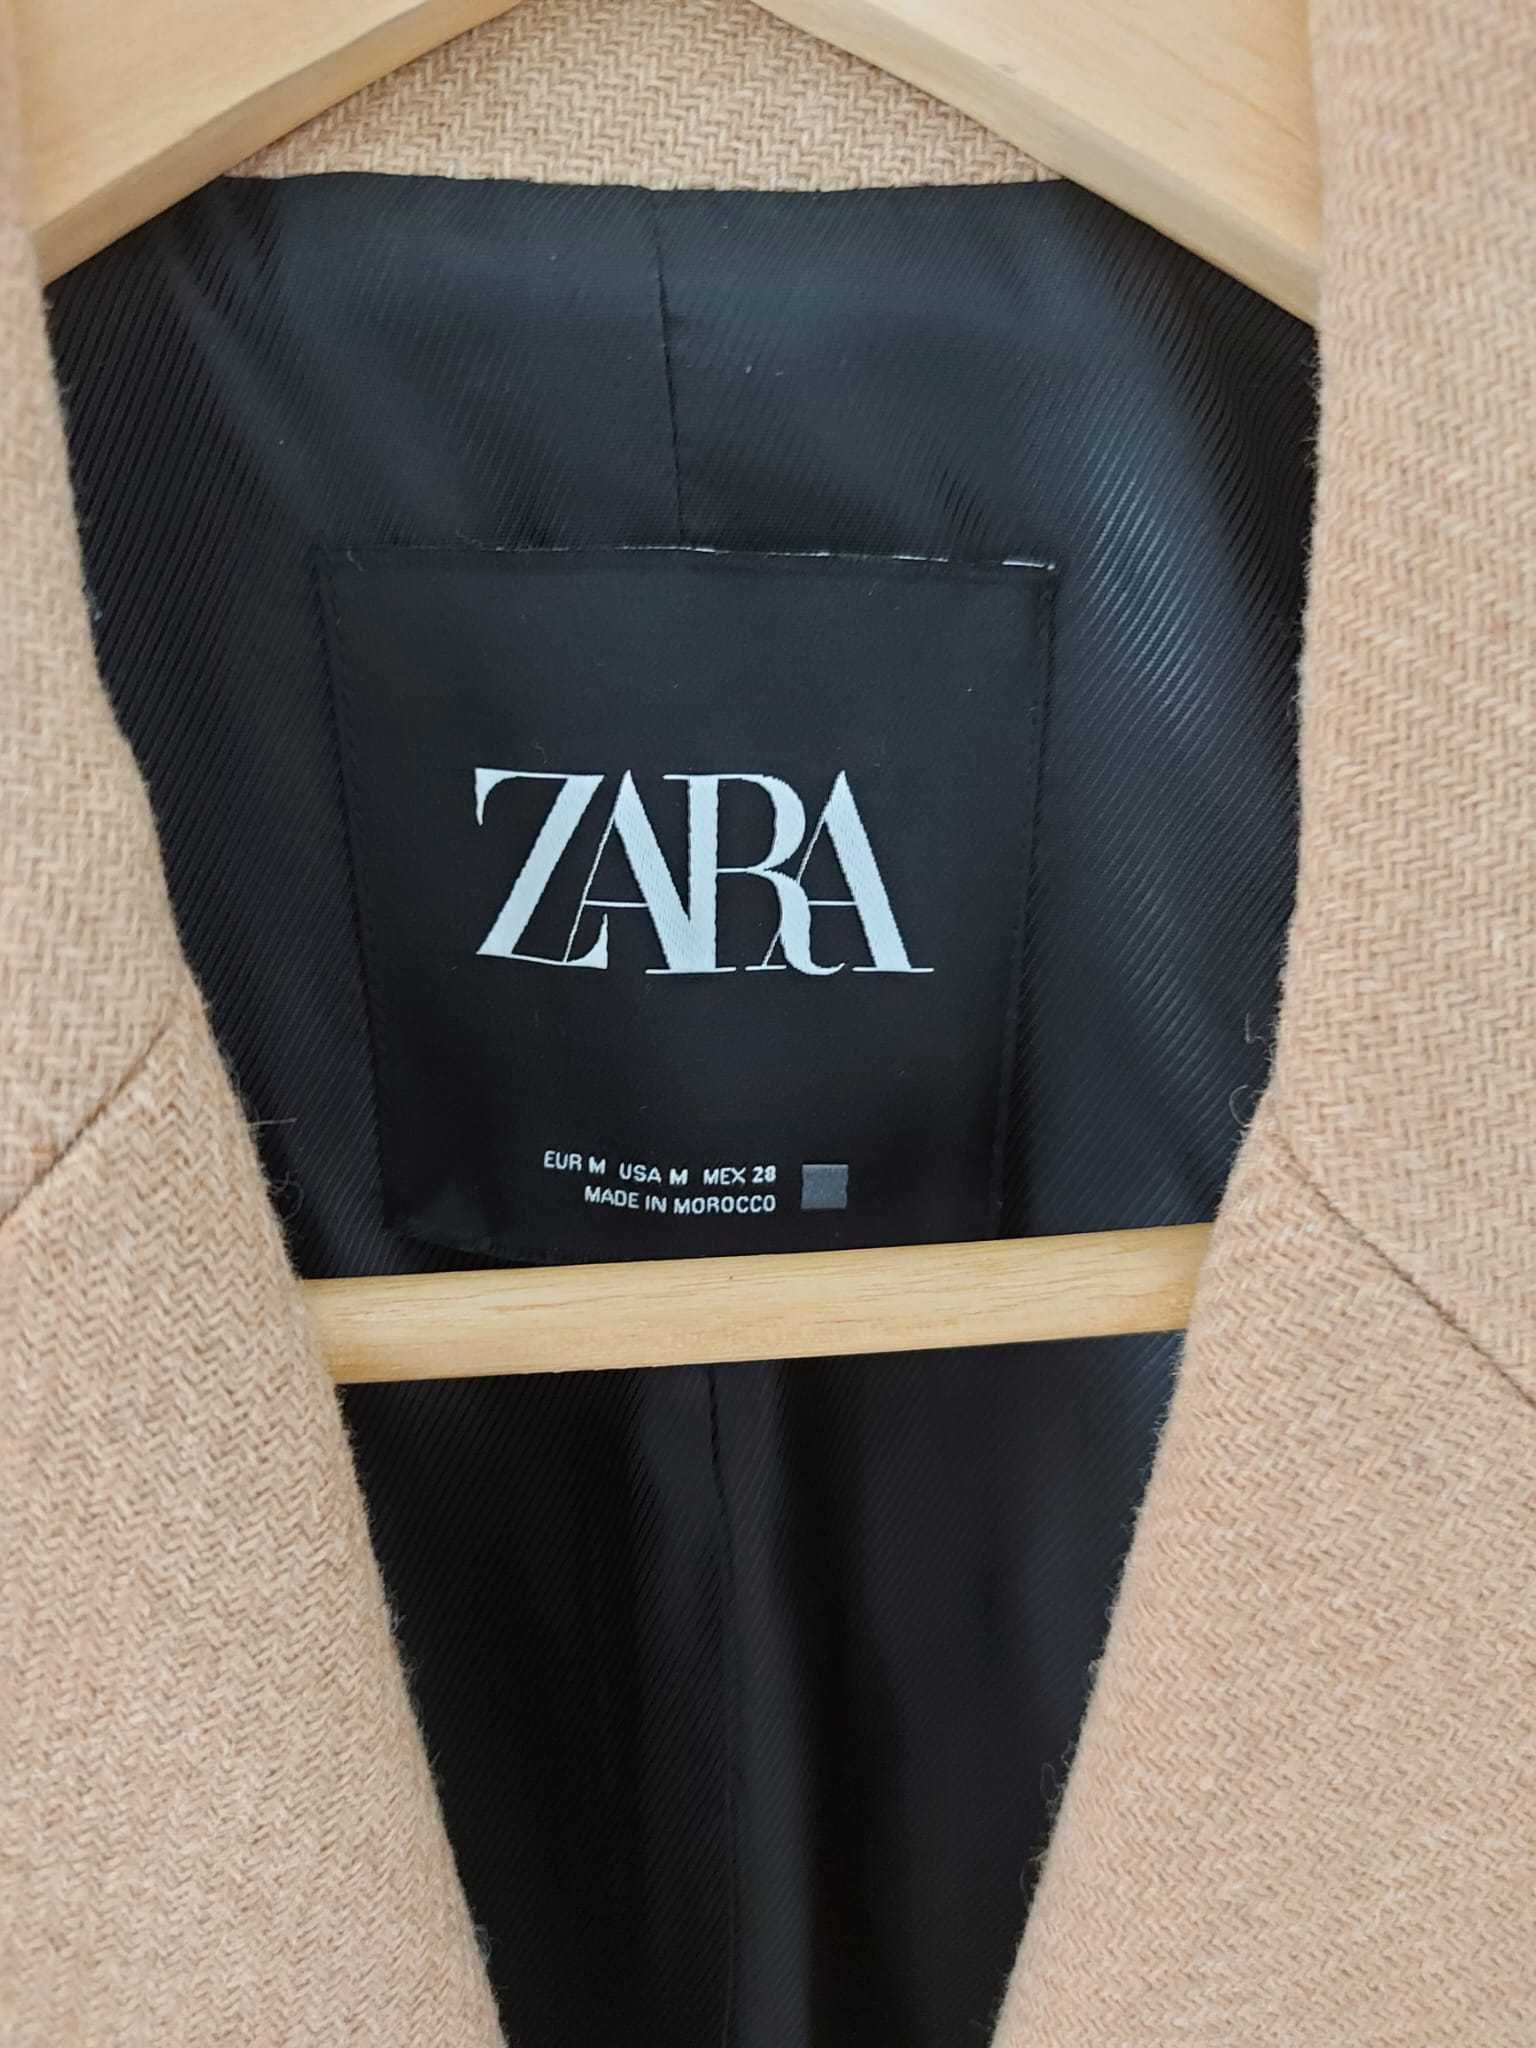 Sobretudo marca Zara